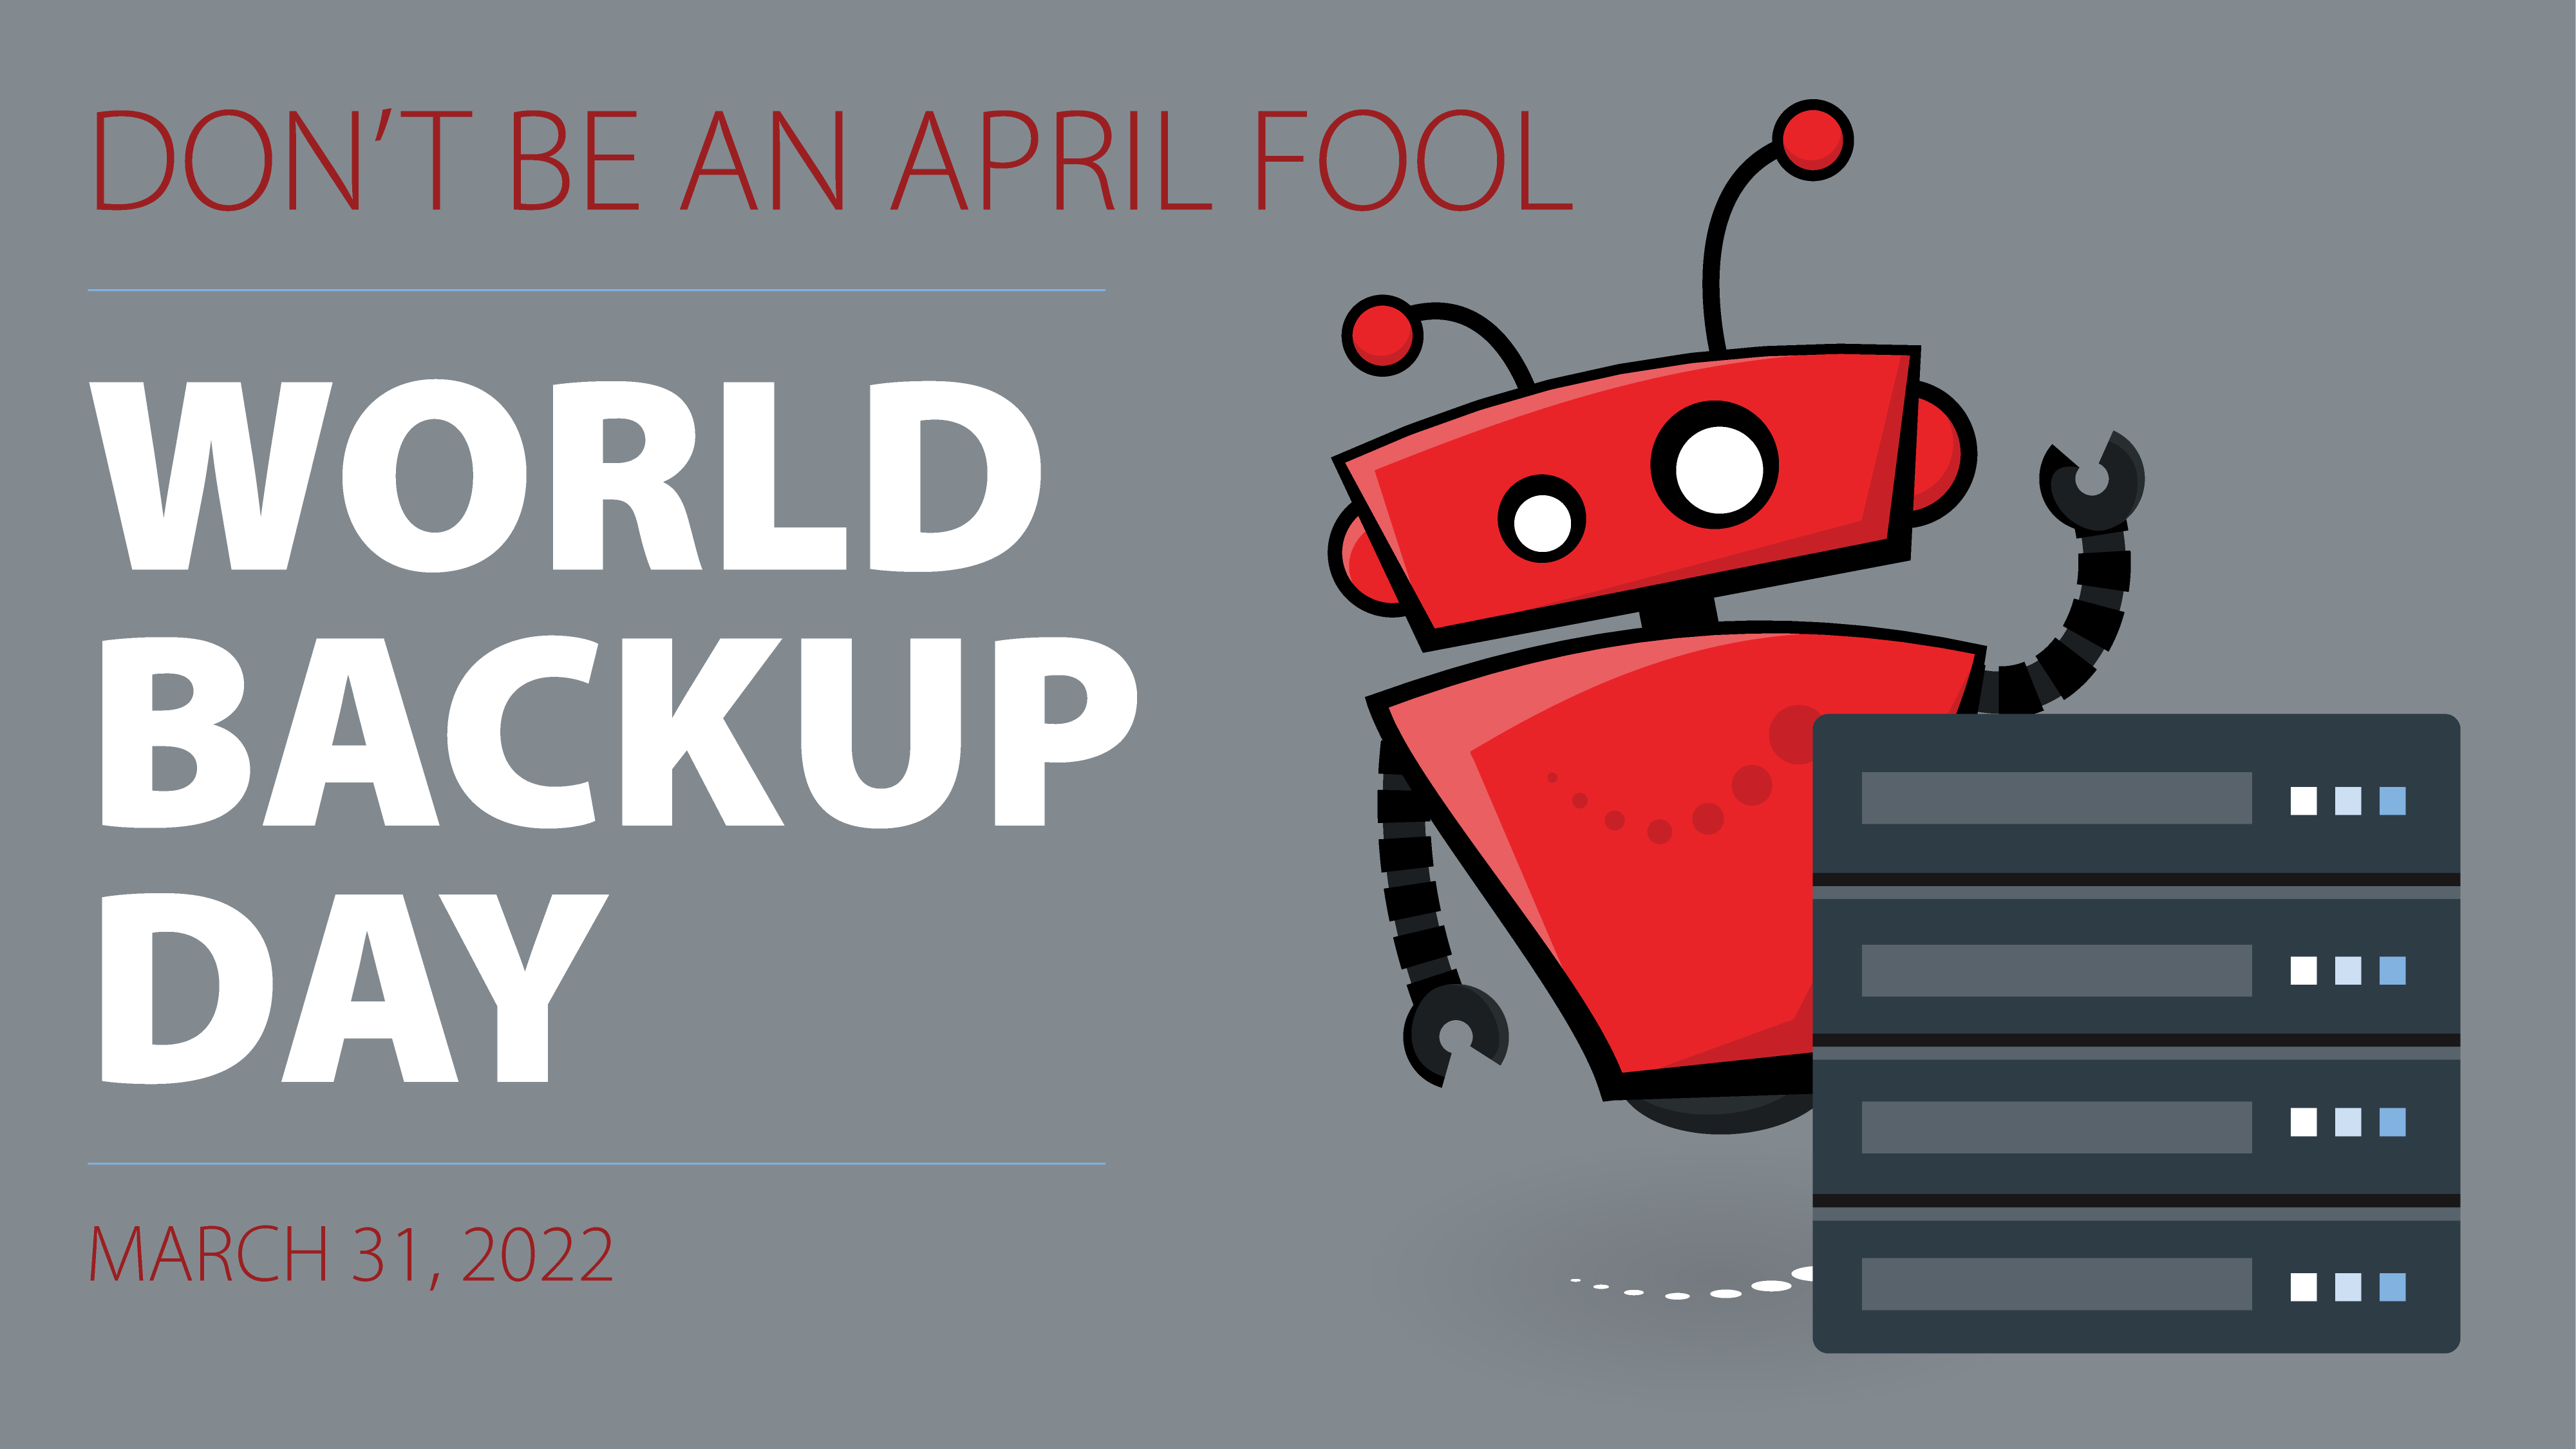 Ways to Backup Your Data on World Backup Day